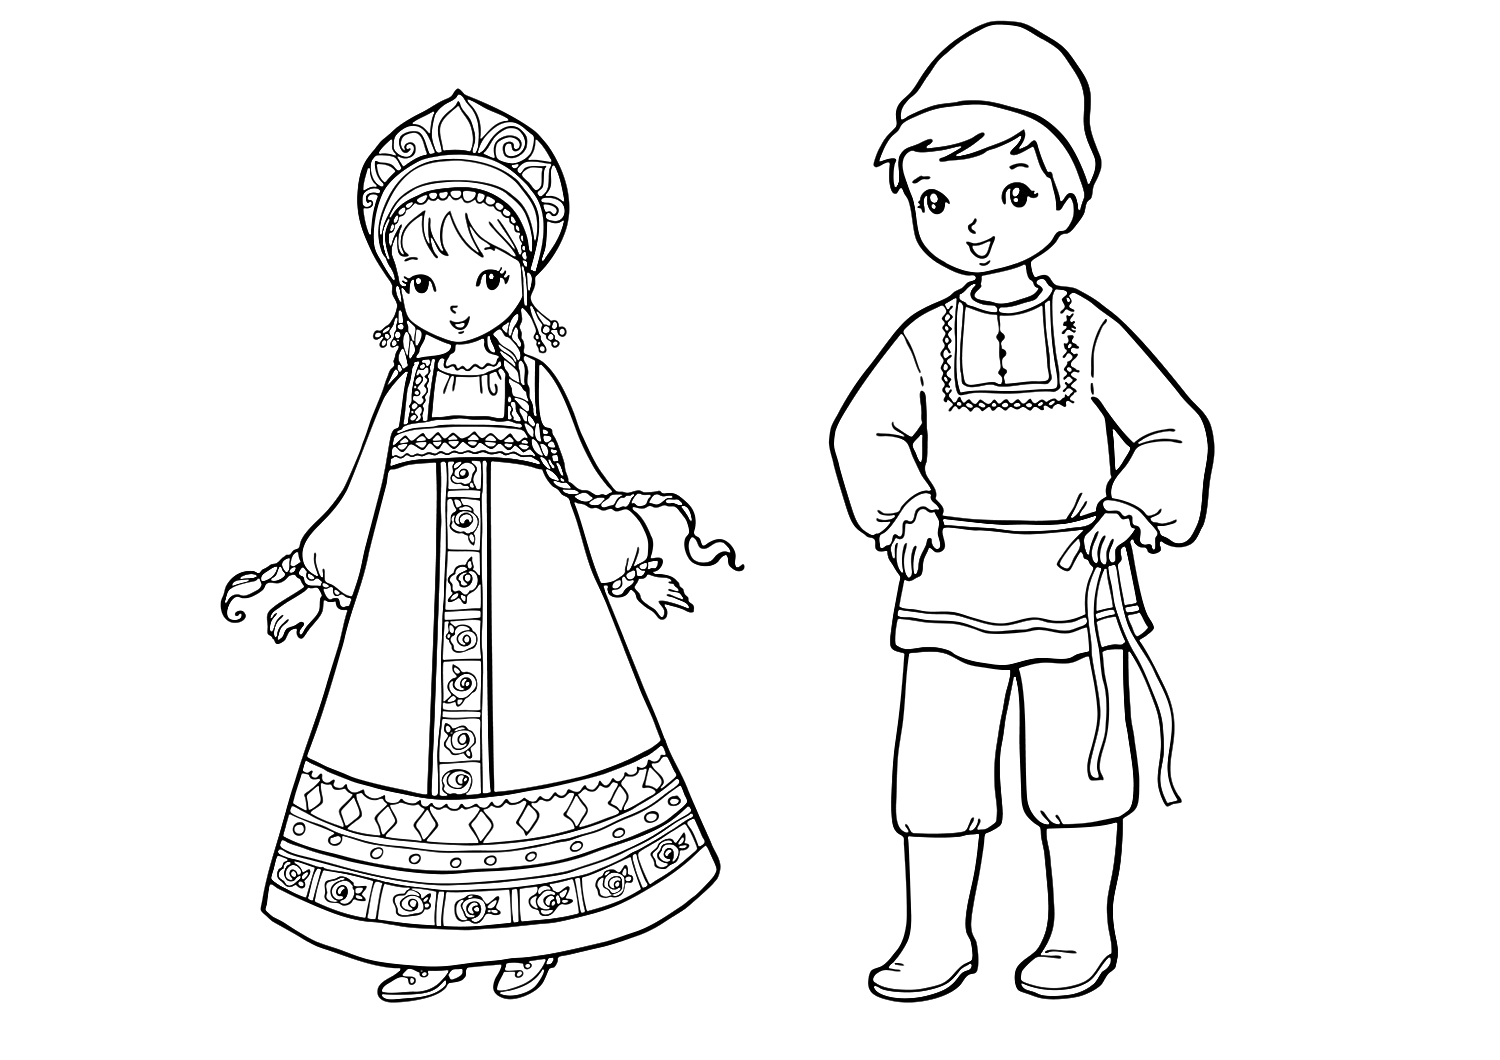 Раскраска Русские народные костюмы - девочка в сарафане с кокошником и мальчик в рубахе с кушаком и сапогах